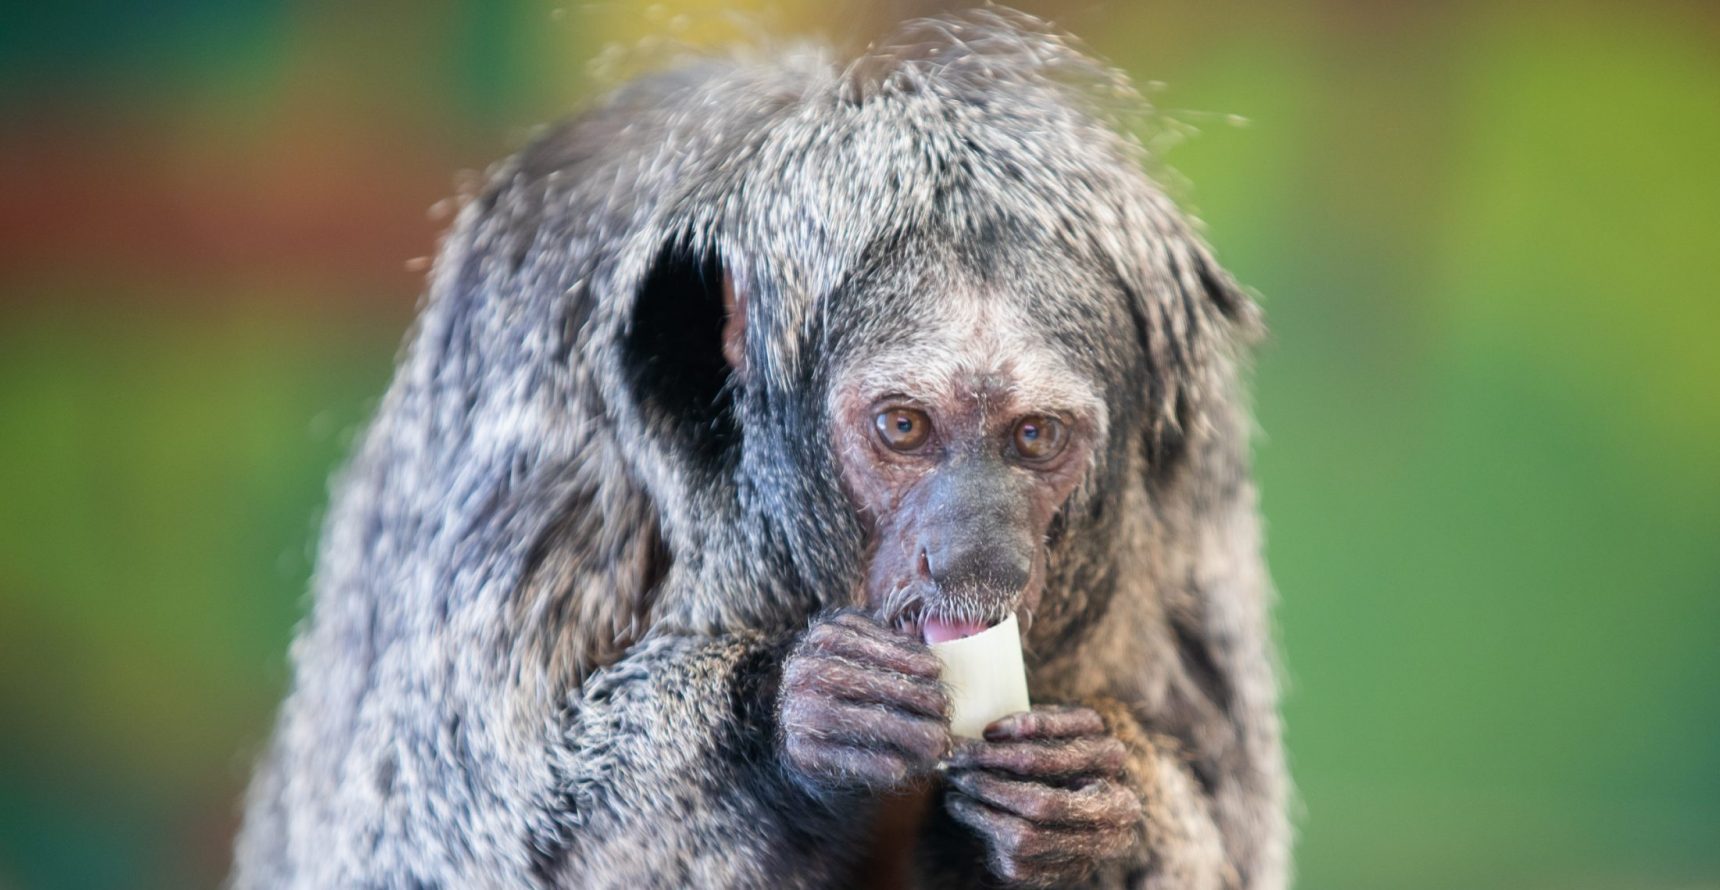 White-faced Saki monkey